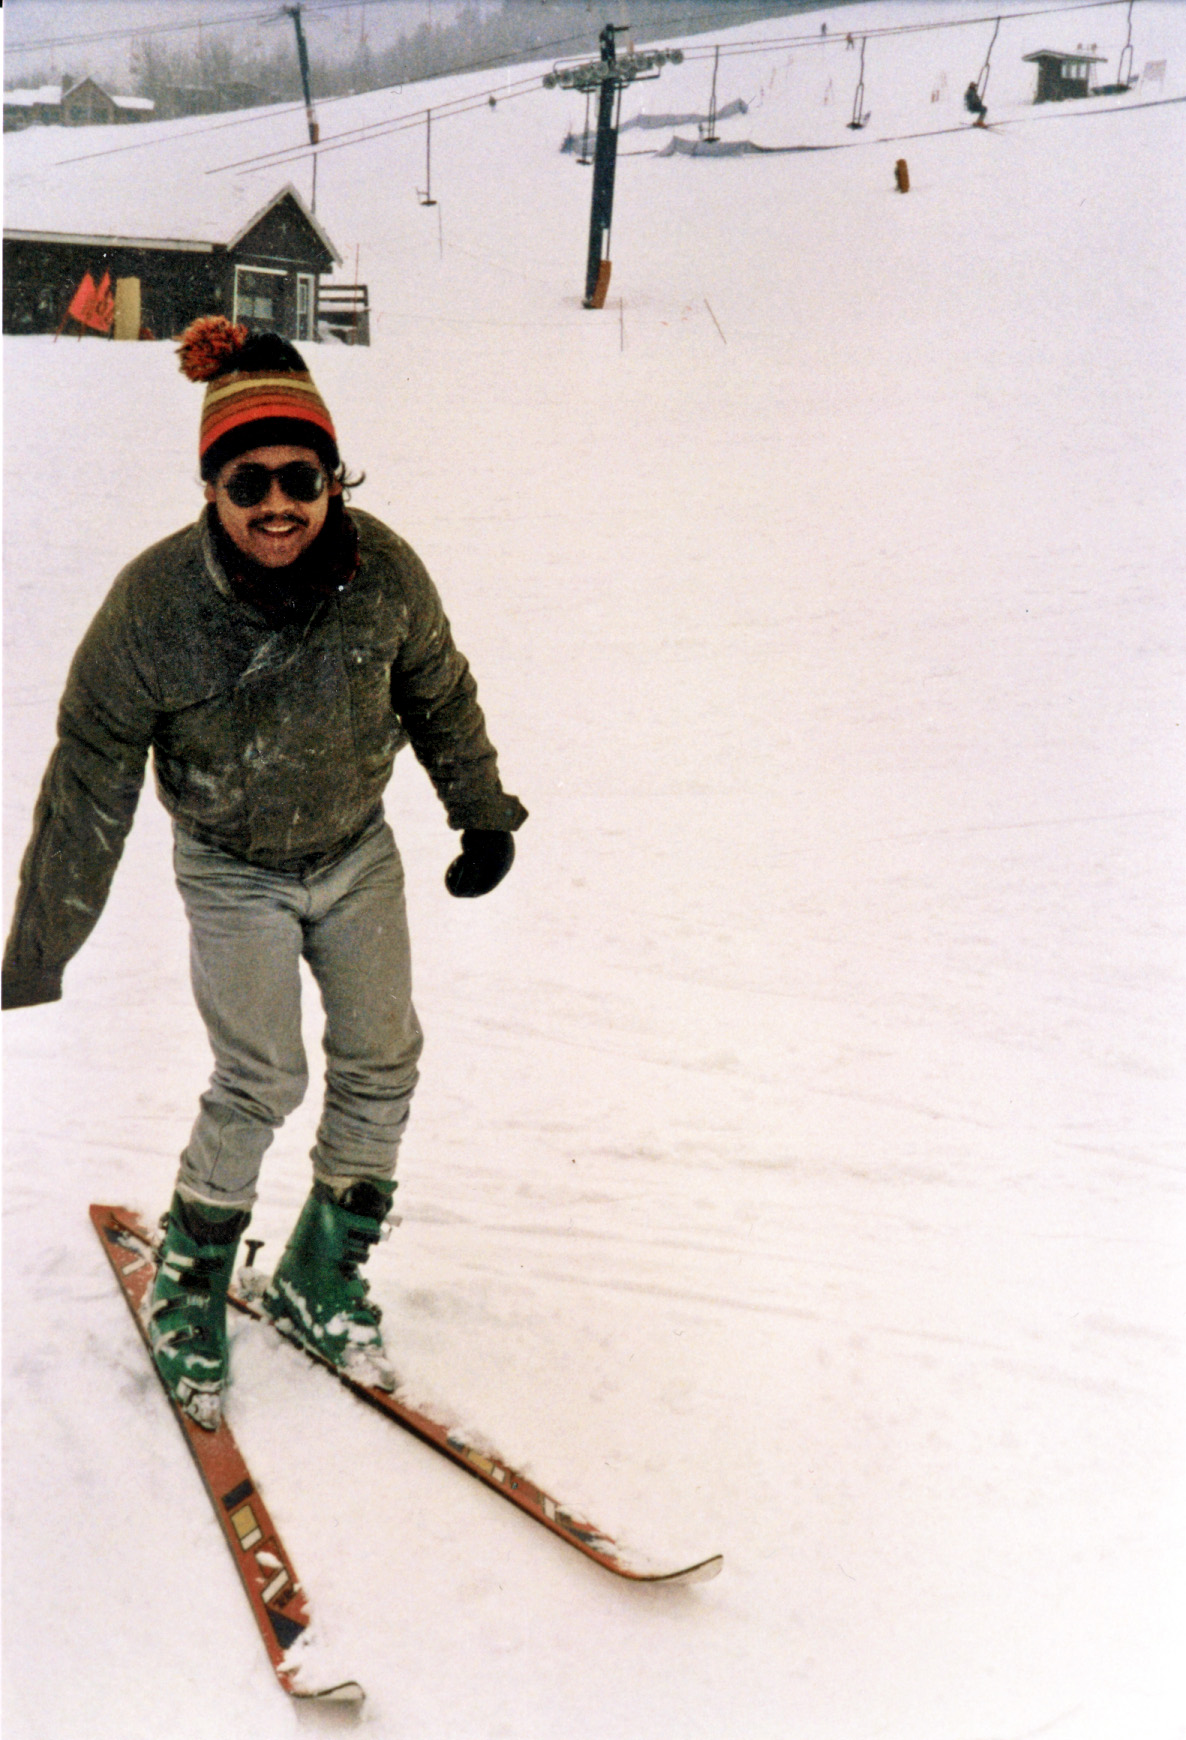 Carlos in Colorado skiing